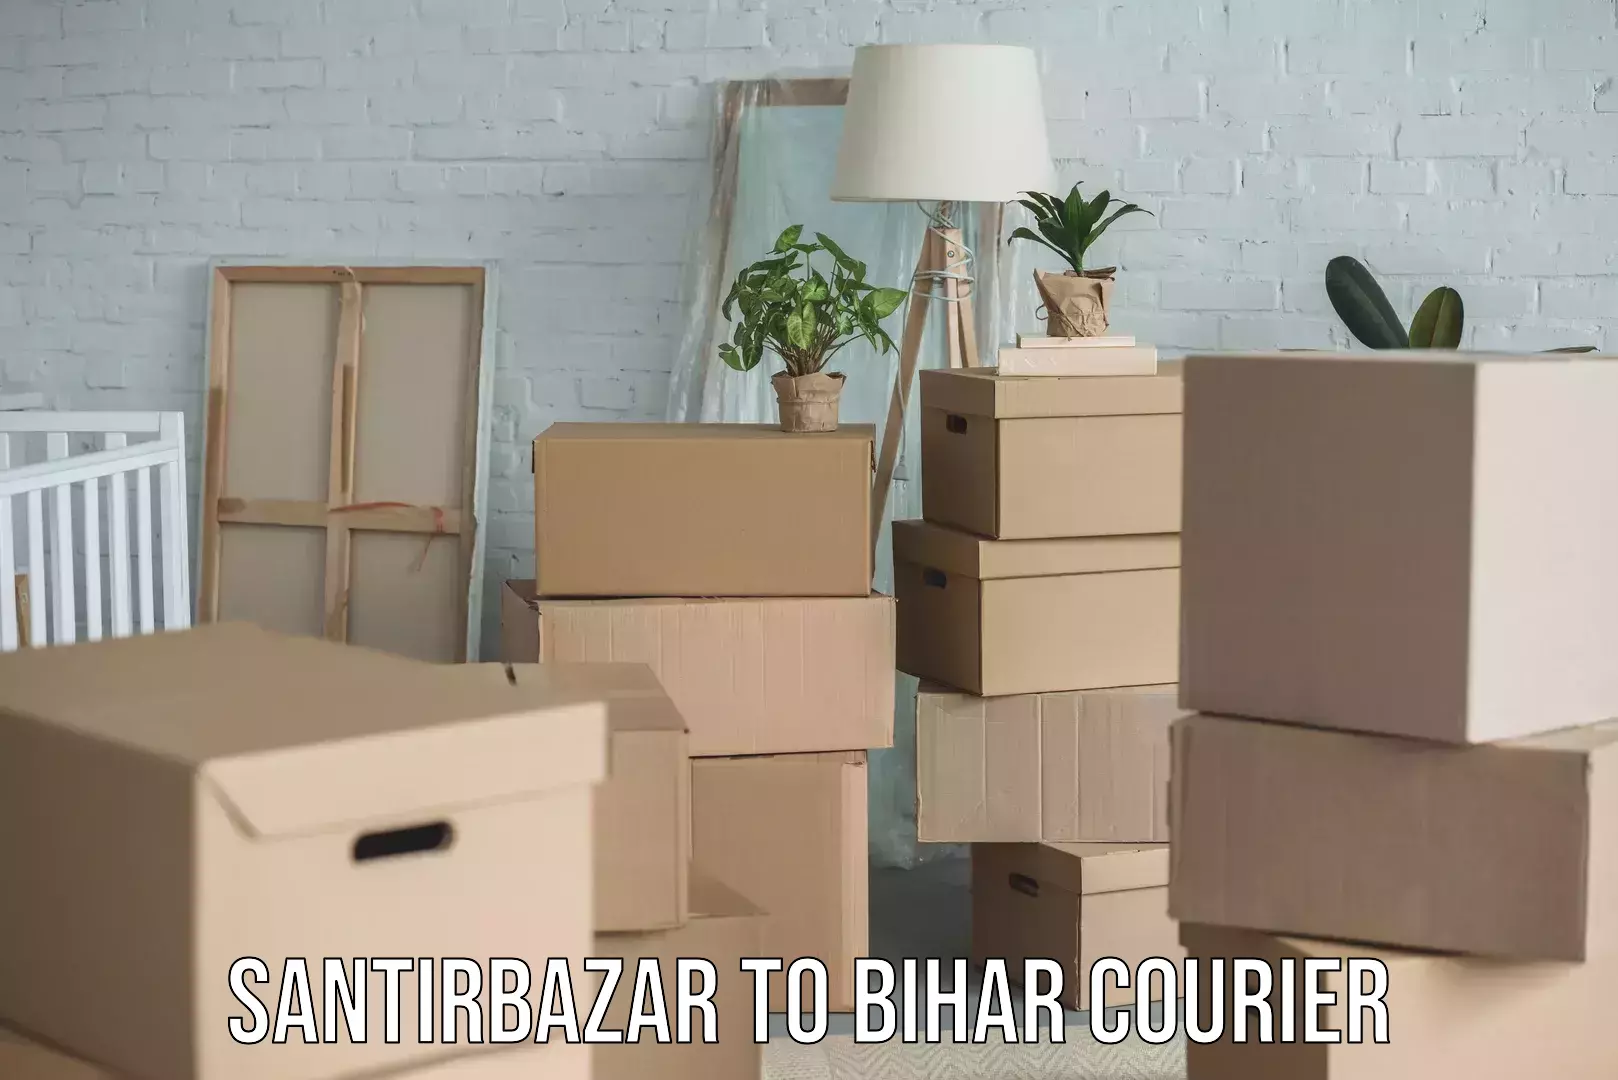 Urgent courier needs Santirbazar to Bihar